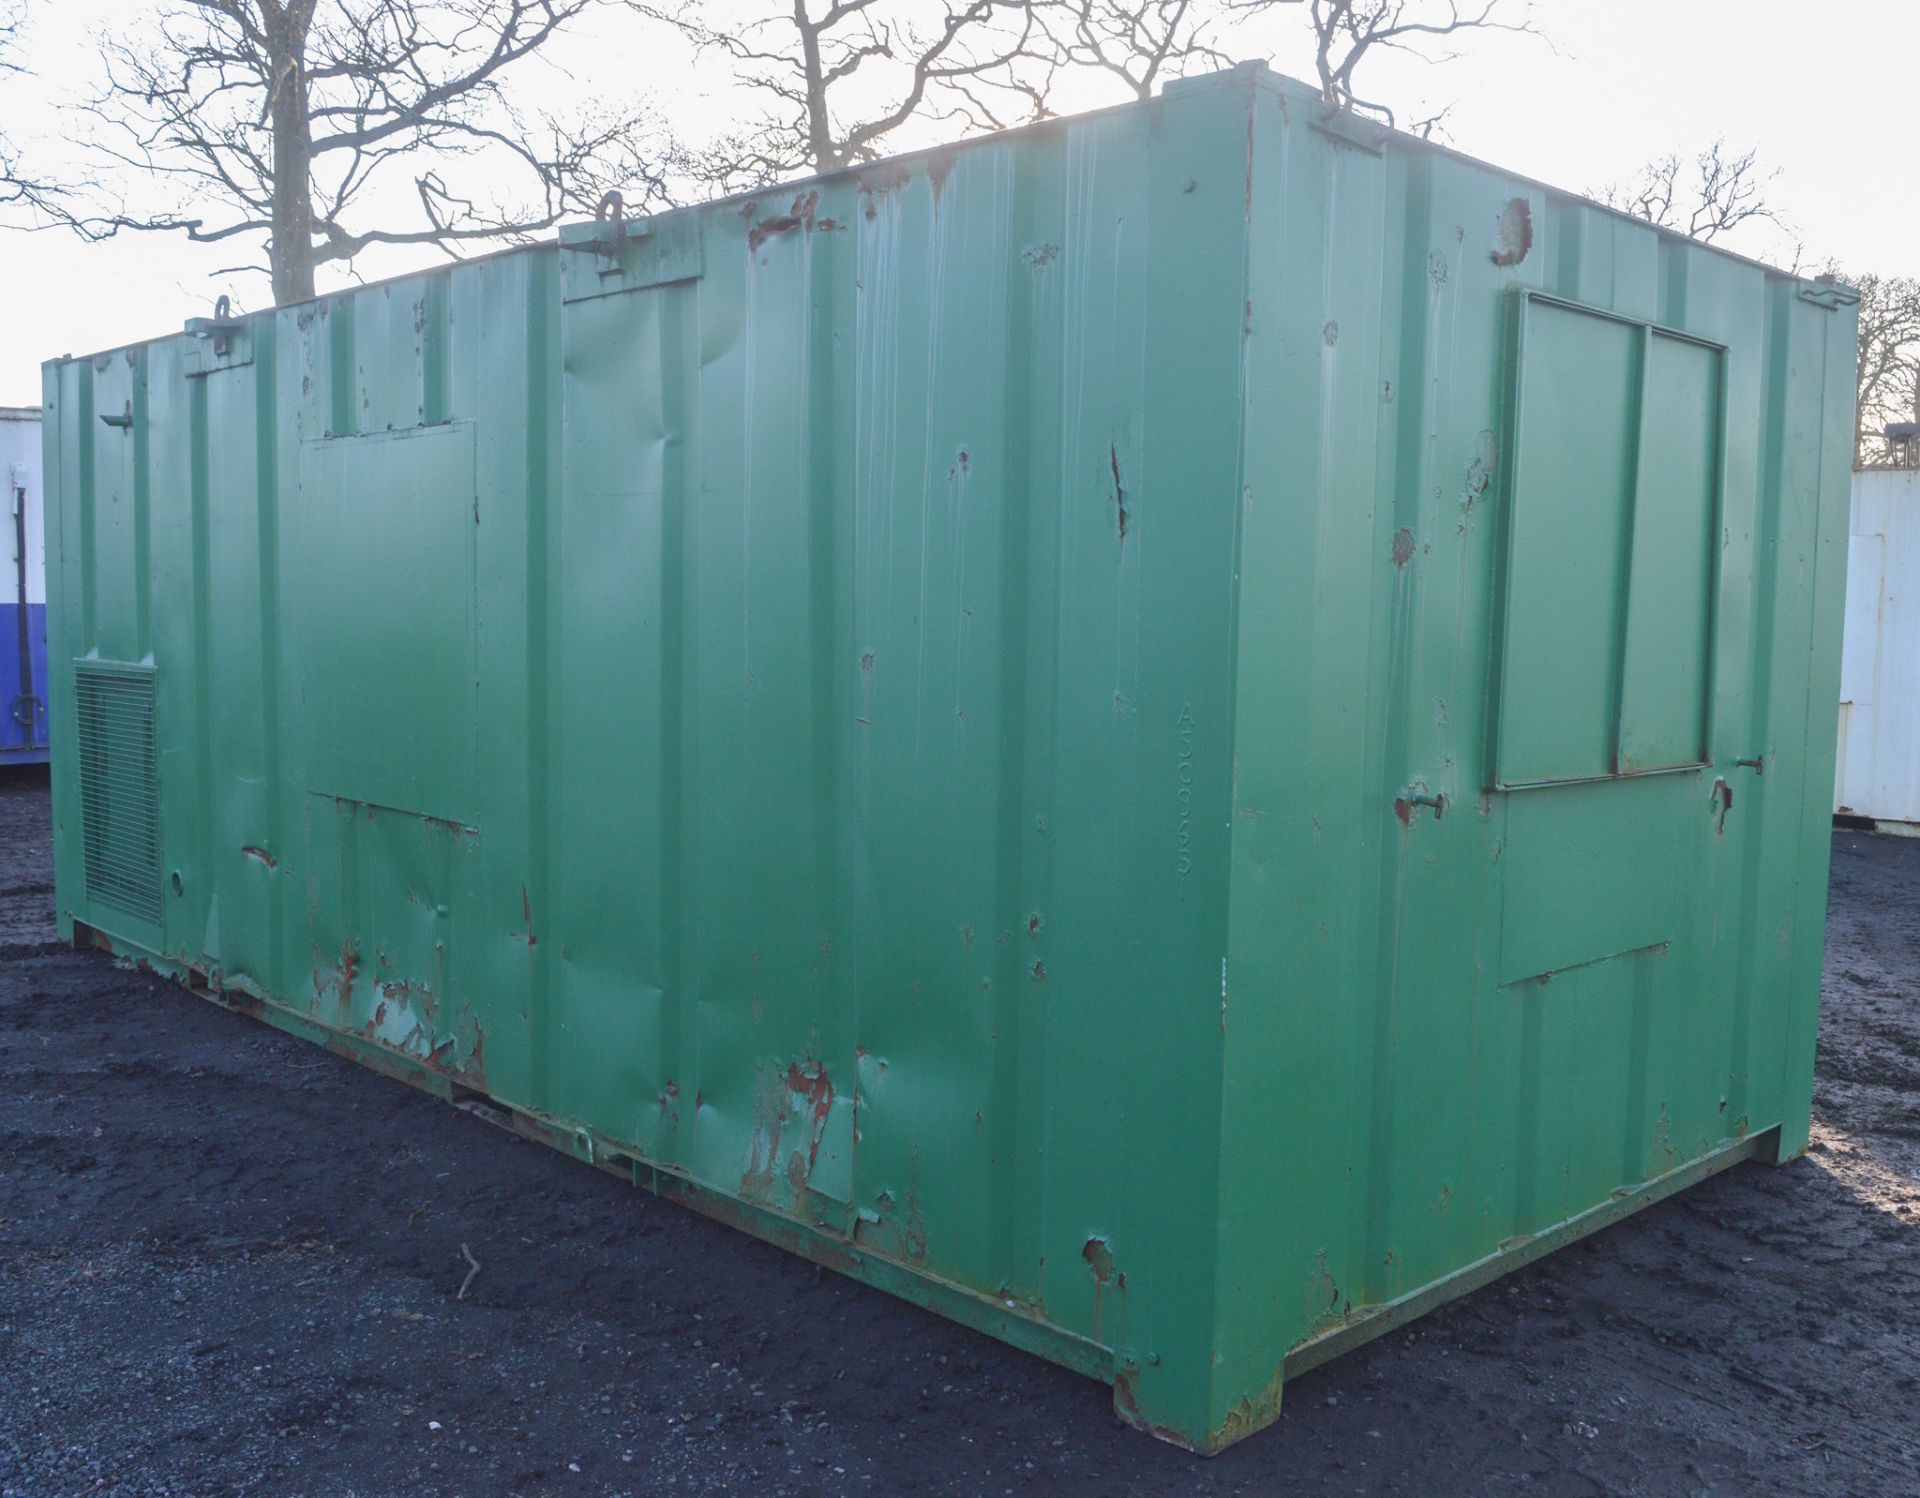 21 ft x 9 ft steel anti vandal welfare unit  c/w diesel generator & keys in office  A509651 - Image 3 of 9